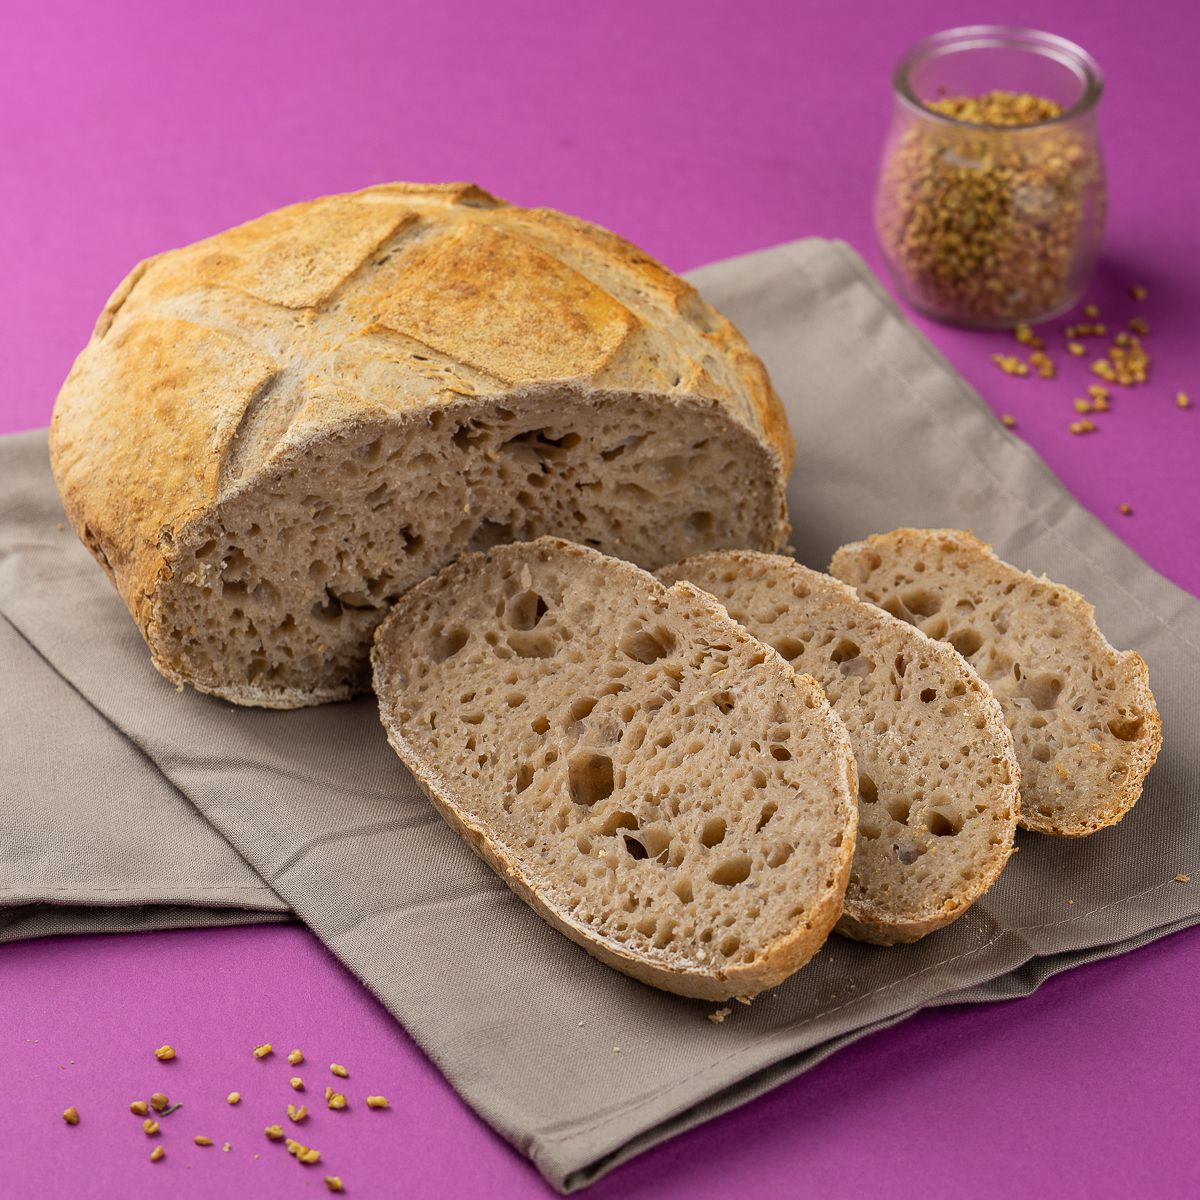 Хлебцы: состав и калорийность диетического продукта. полезные свойства хлебцев и их возможный вред для организма